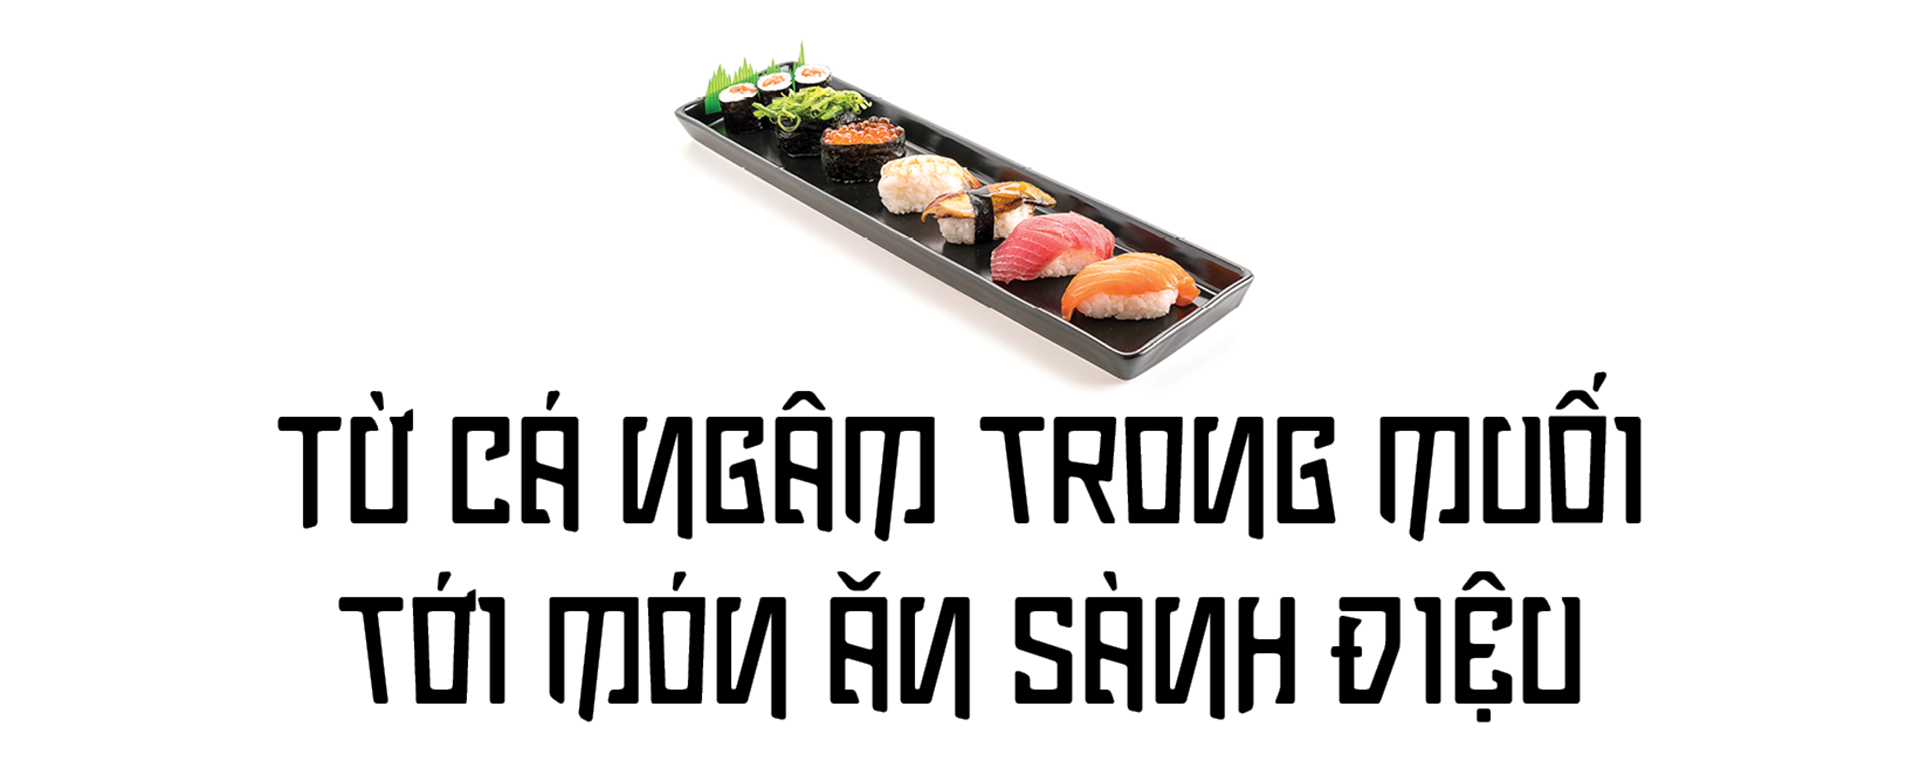 Sushi thời Edo khác gì sushi thời hiện đại? - Ảnh 1.